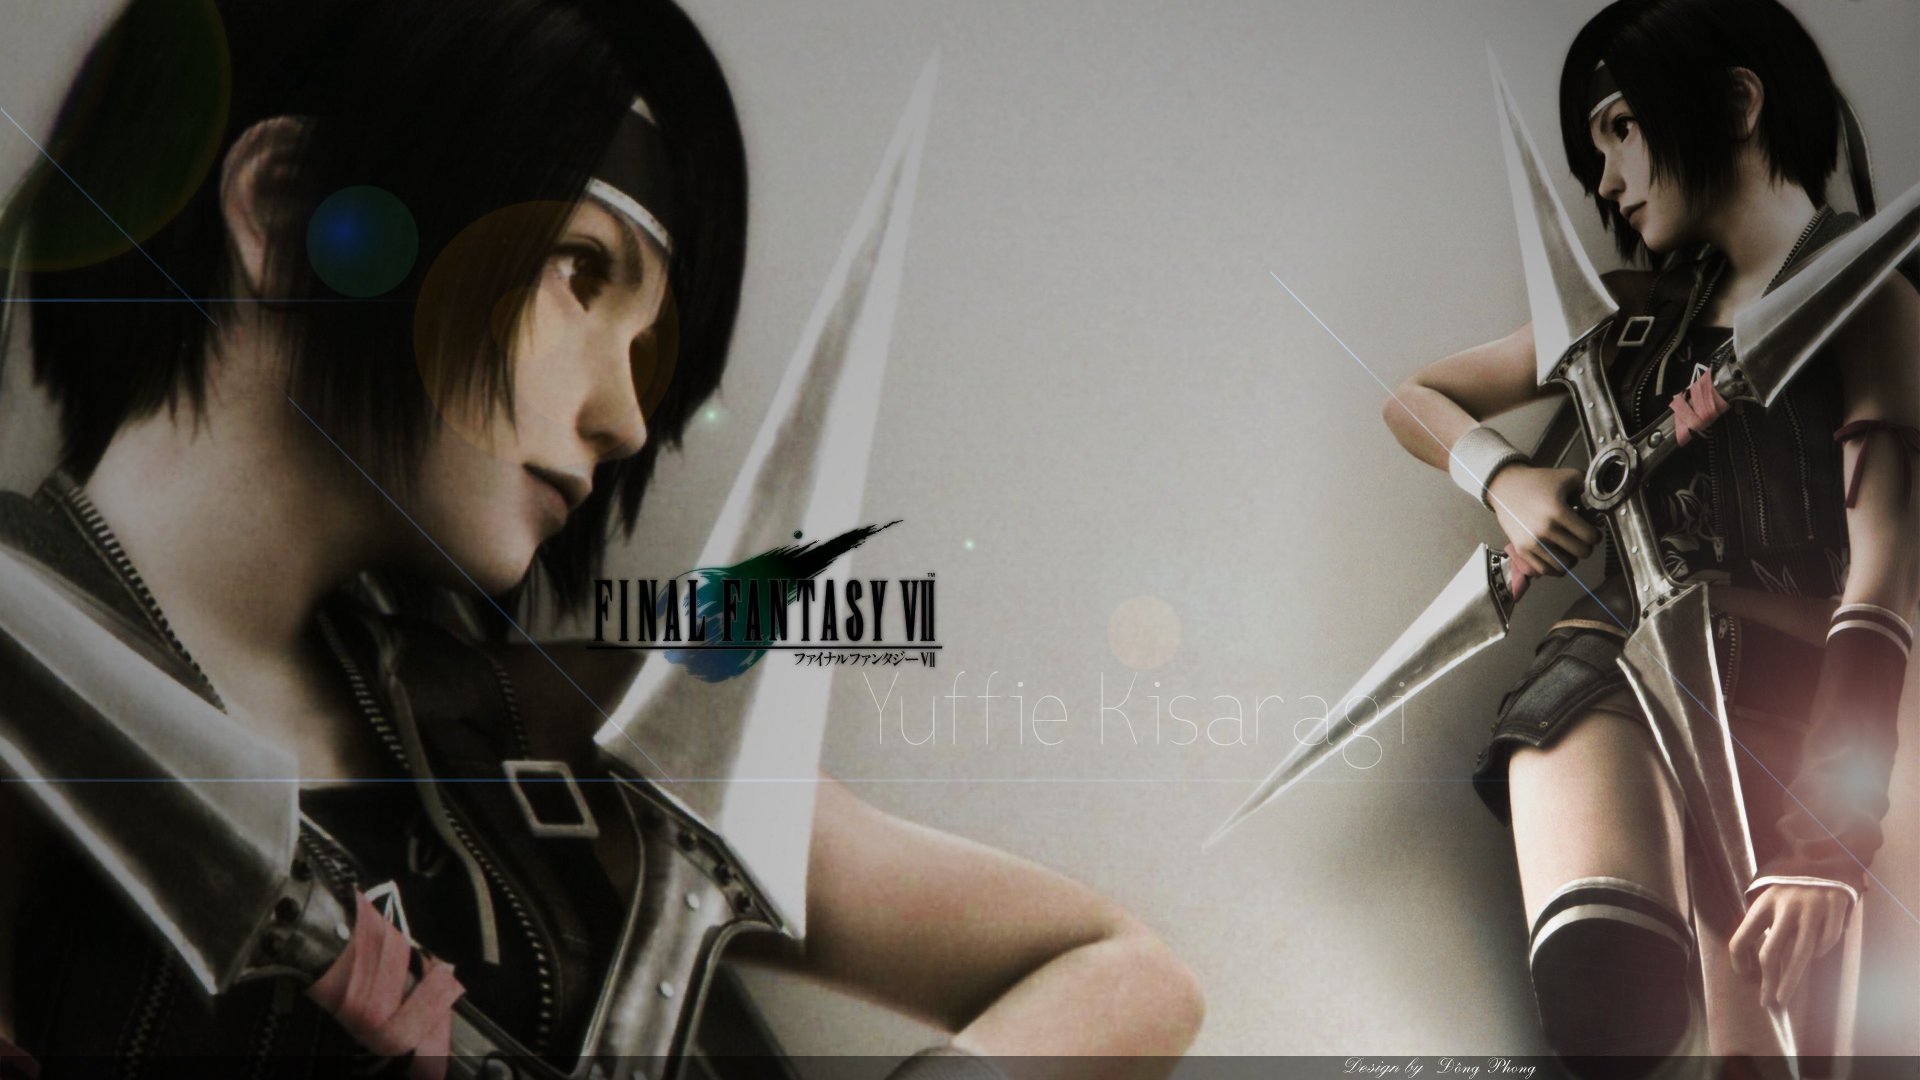 Yuffie Kisaragi Wallpaper » WallDevil - Best free HD desktop and ...